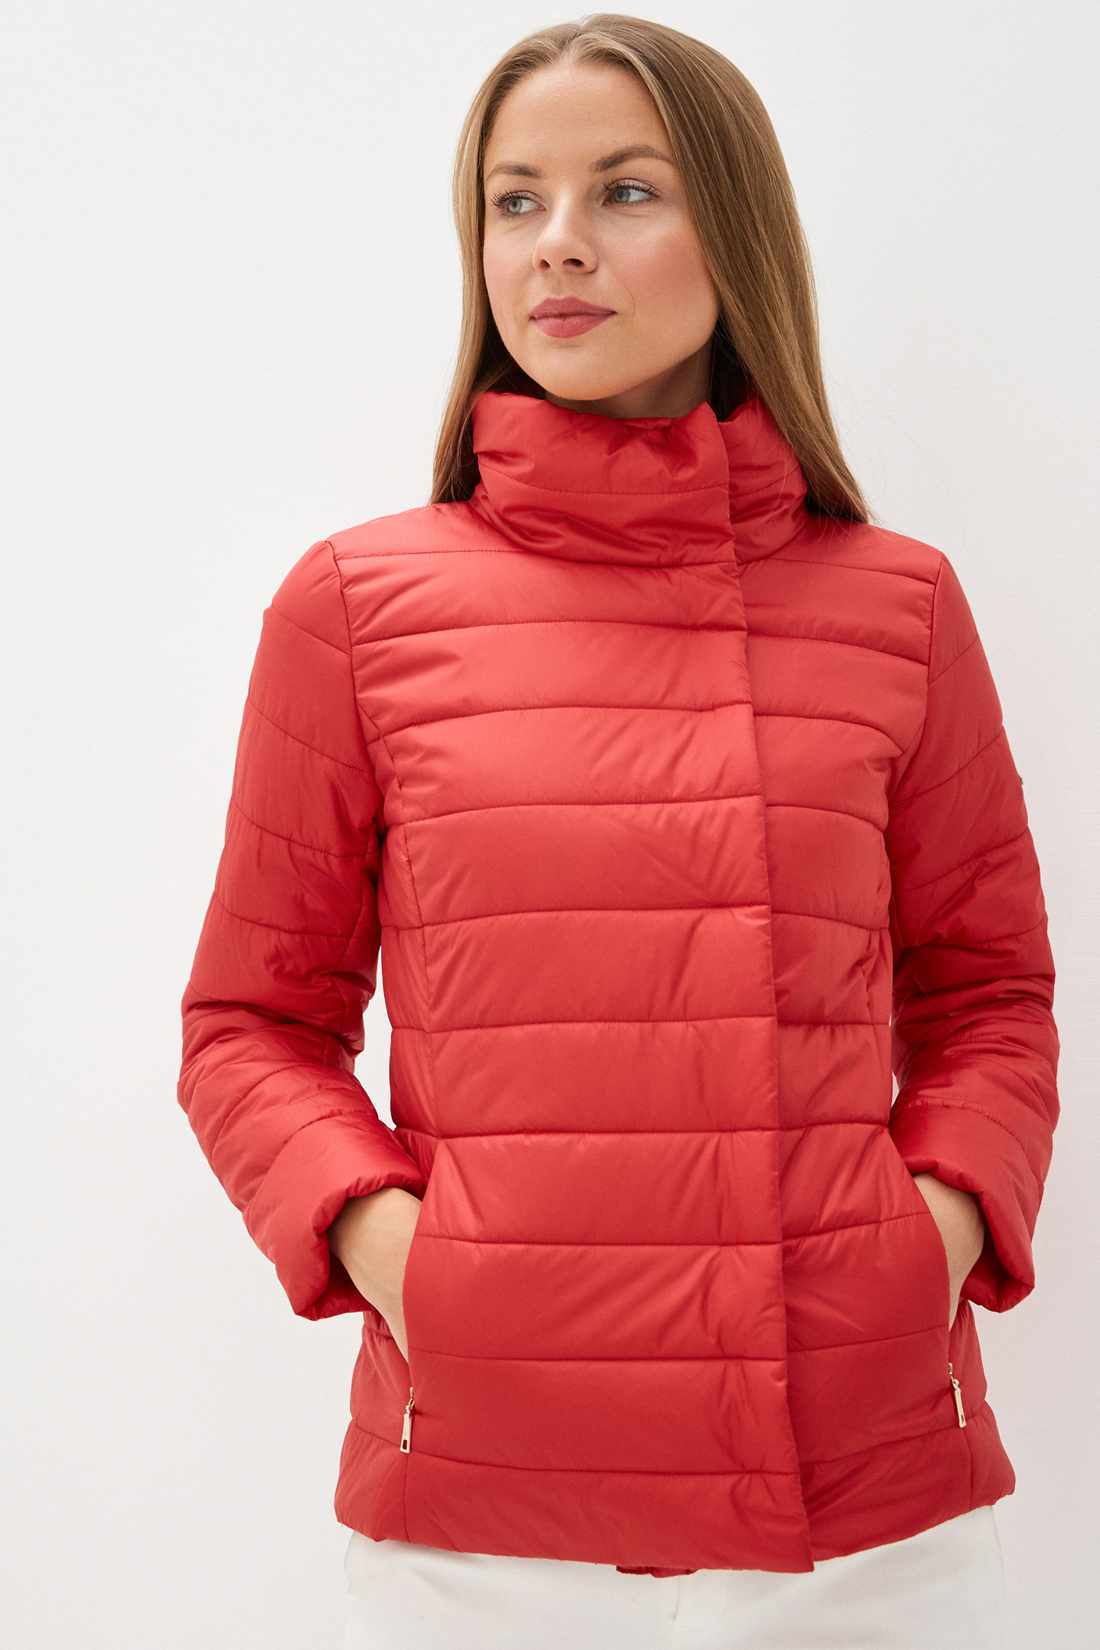 Куртка с воротником (арт. baon B030002), размер XXL, цвет красный Куртка с воротником (арт. baon B030002) - фото 1